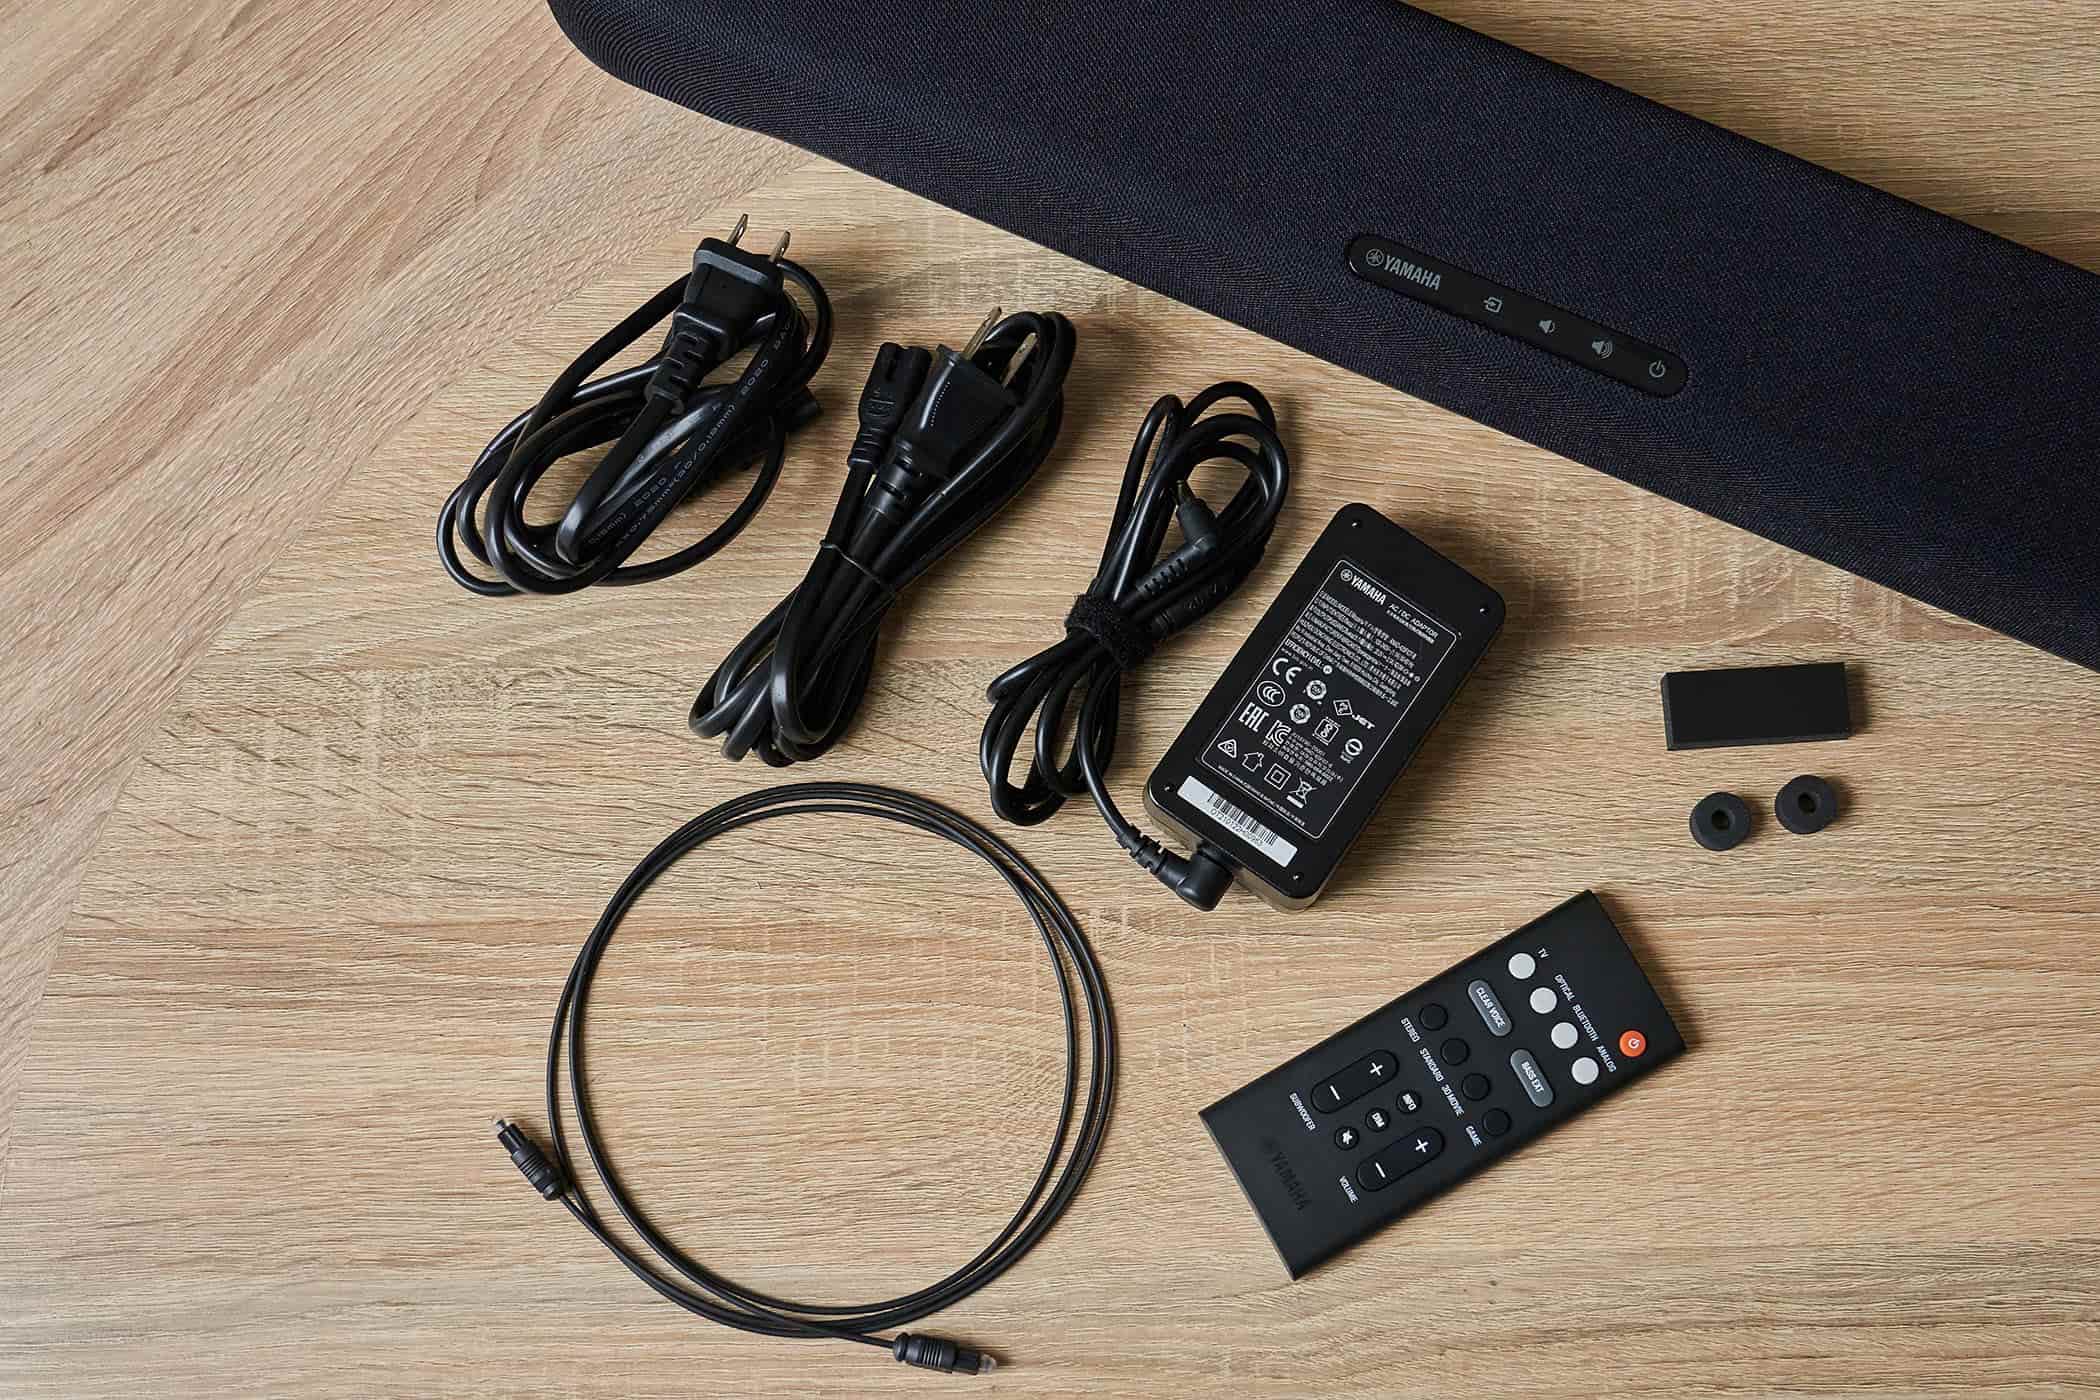 除了 Soundbar 主機和超低音揚聲器外，隨附配件還包含遙控器*1、AC 電源供應器*1、電源線*2、數位光纖音源線*1、防滑墊*4、安裝模板、墊塊、入門指南*1、安全手冊*1，需要注意的是，SR-C30A 並未附上 HDMI 連接線，如果想以 HDMI 方式將 Soundbar 連接至電視，就需要另購 HDMI 線材。